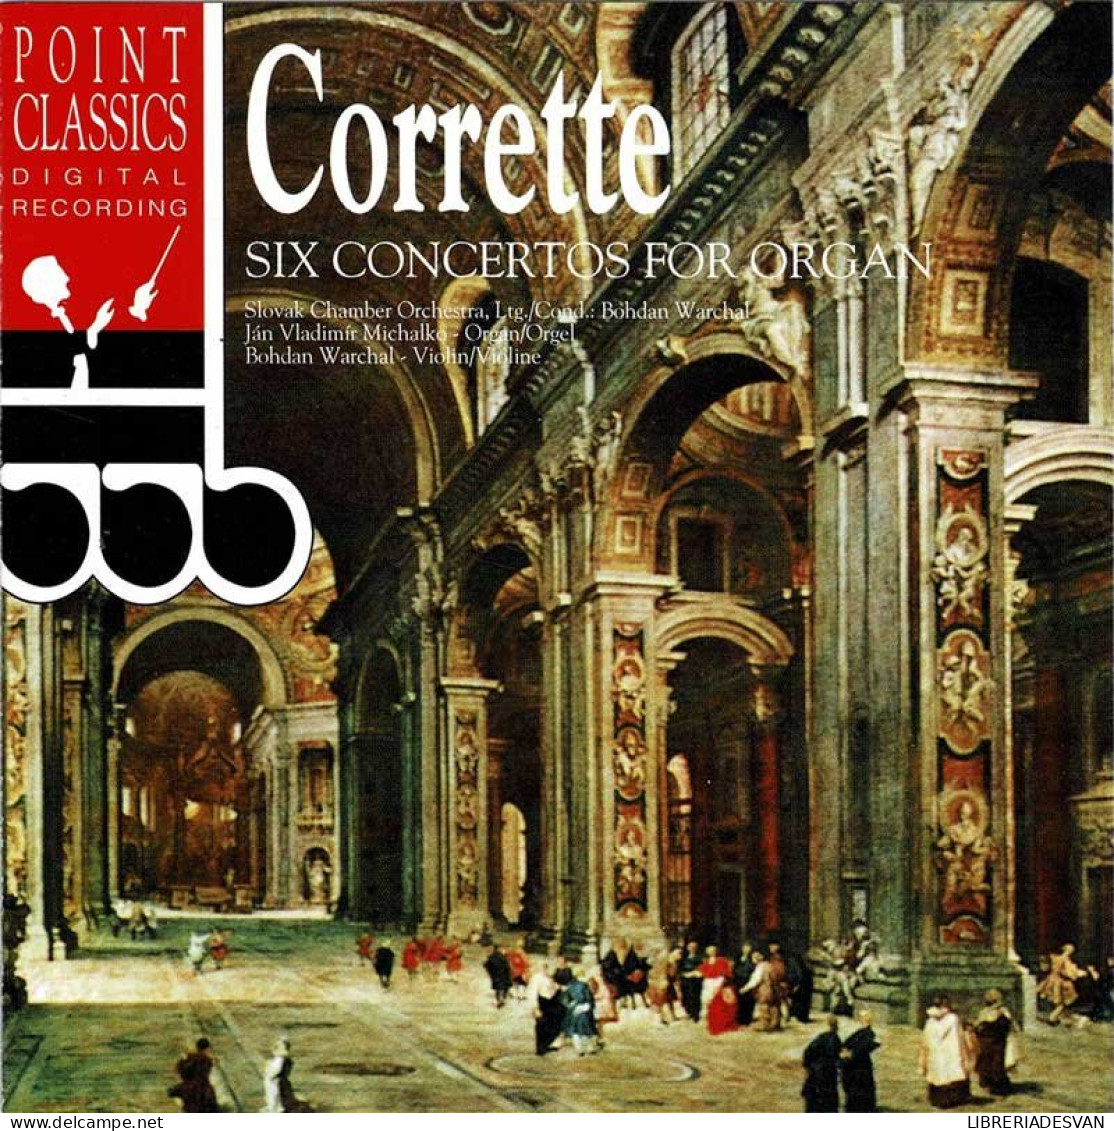 Michel Corrette - Six Concertos For Organ. CD - Classica